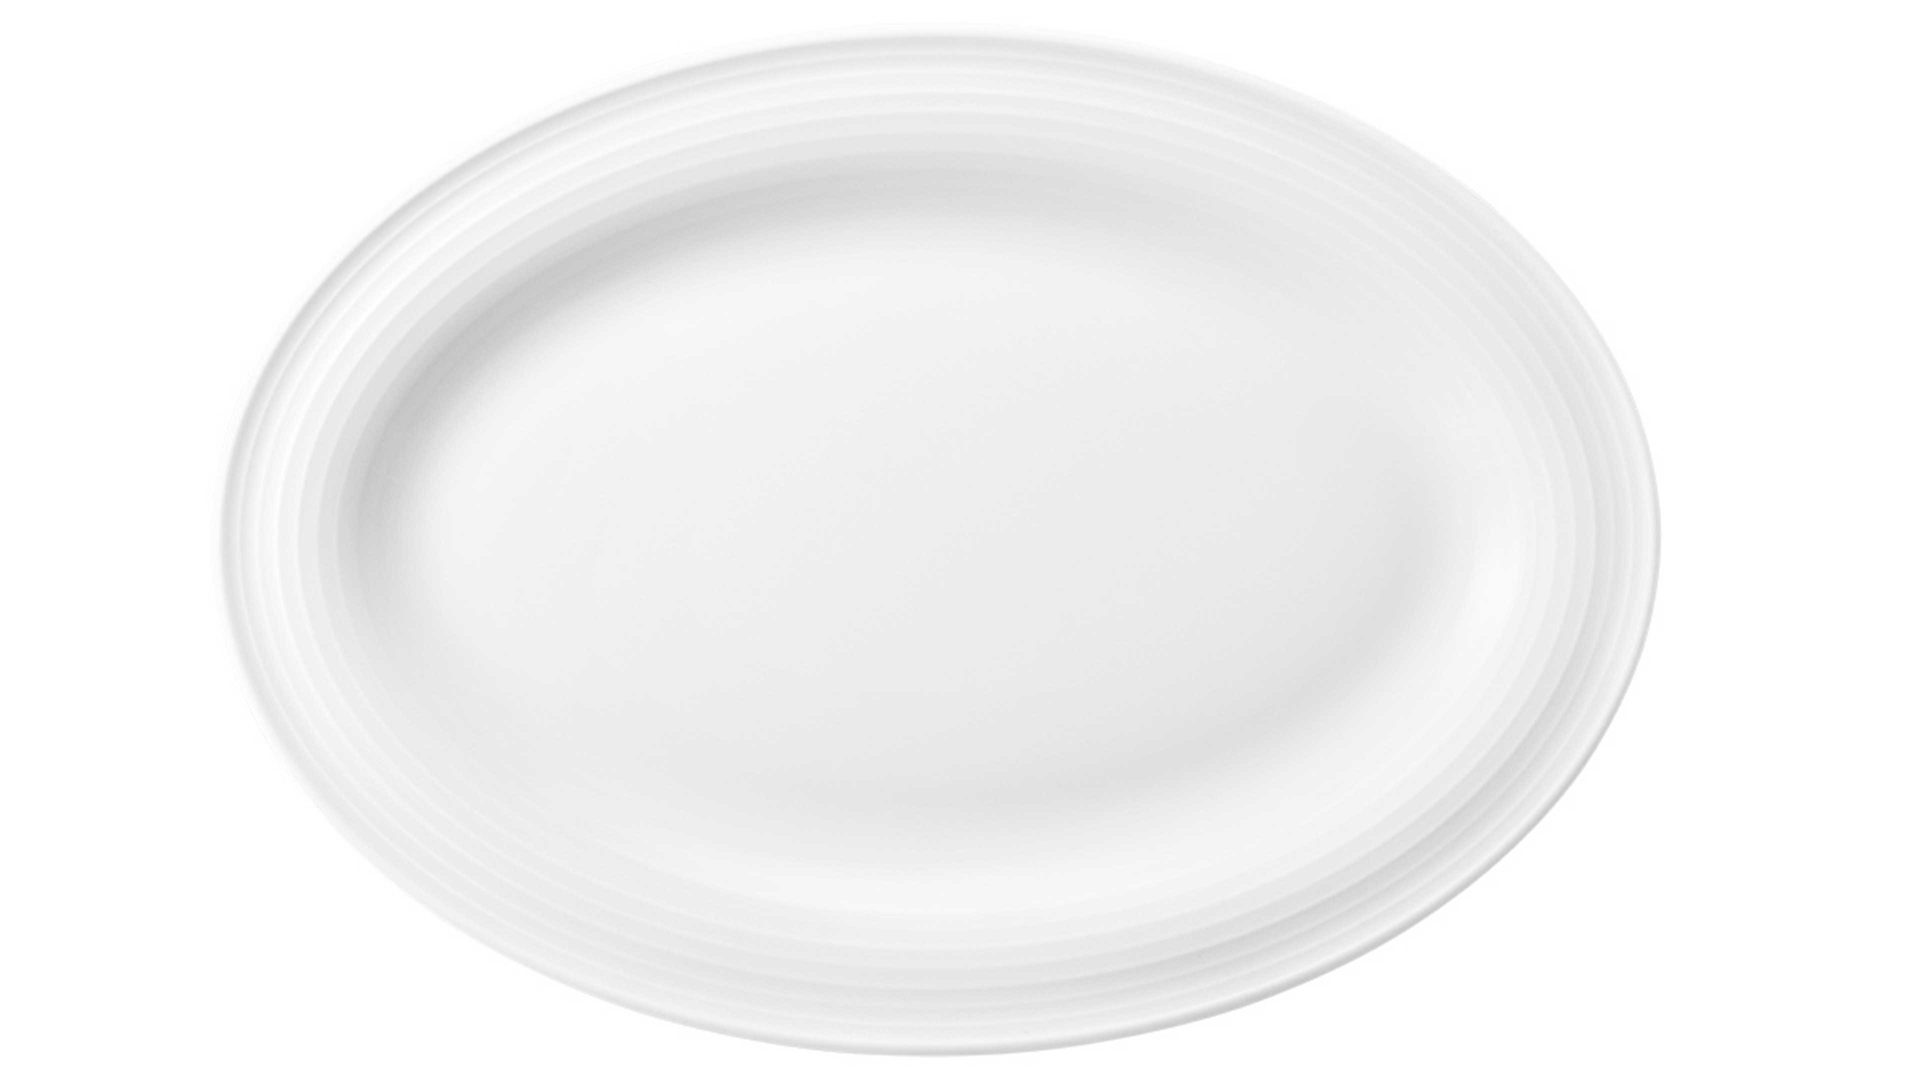 Servierplatte Seltmann aus Porzellan in Weiß Seltmann Geschirrserie Beat 3 – Servierplatte weißes Porzellan – ca. 25 x 18 cm